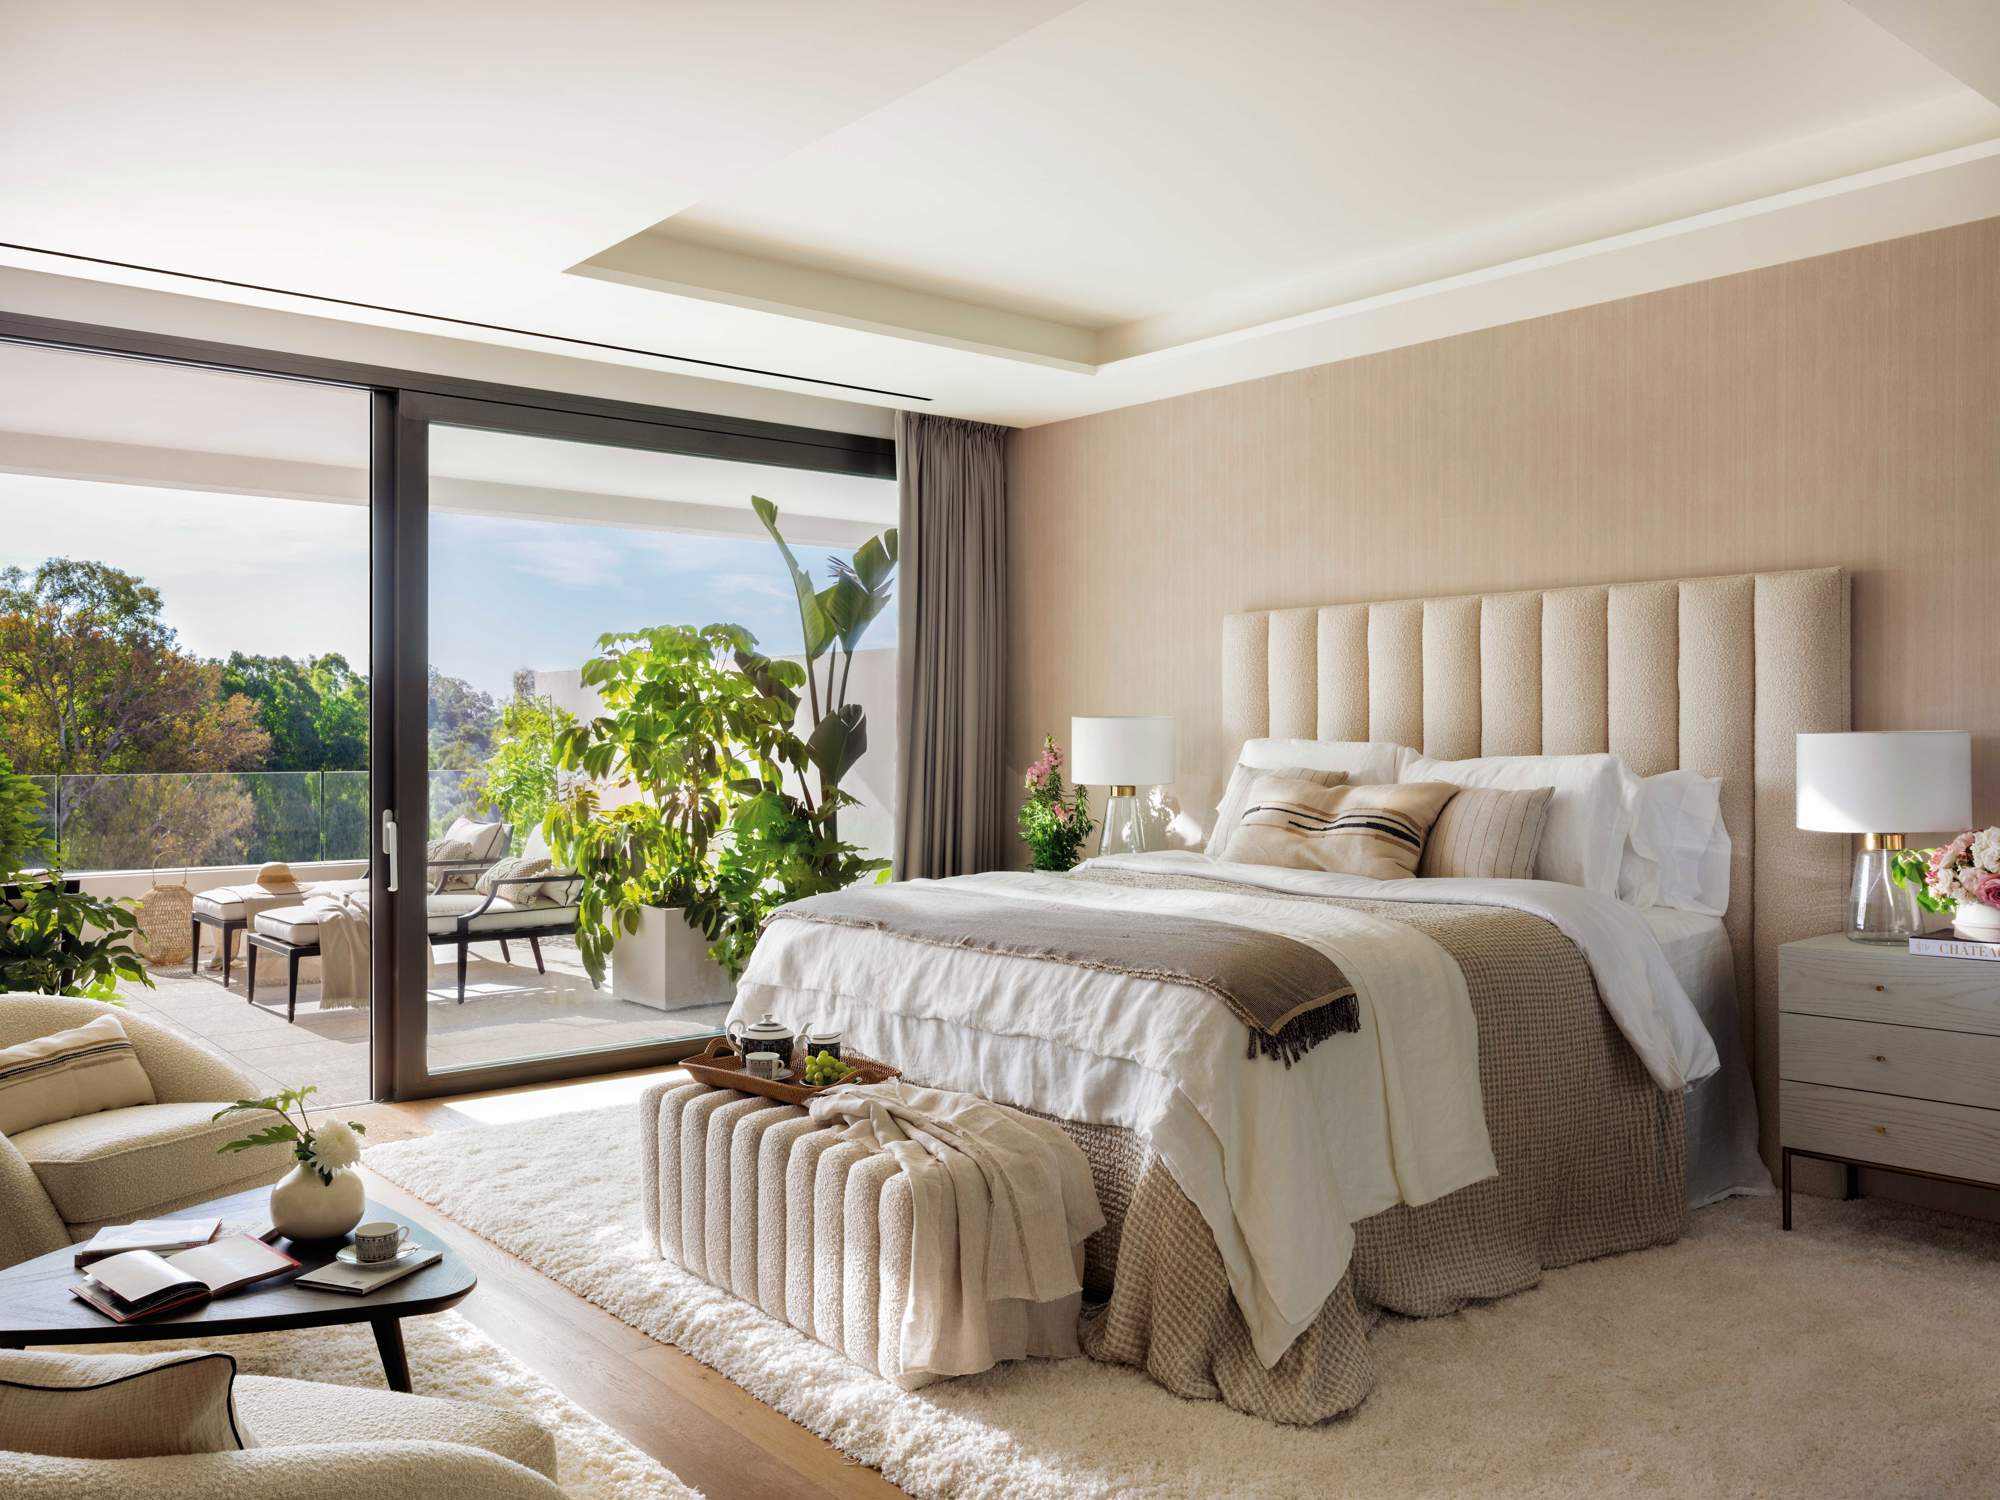 Dormitorio de matrimonio moderno con cama alta y cabecero ondulado en tonos neutros.